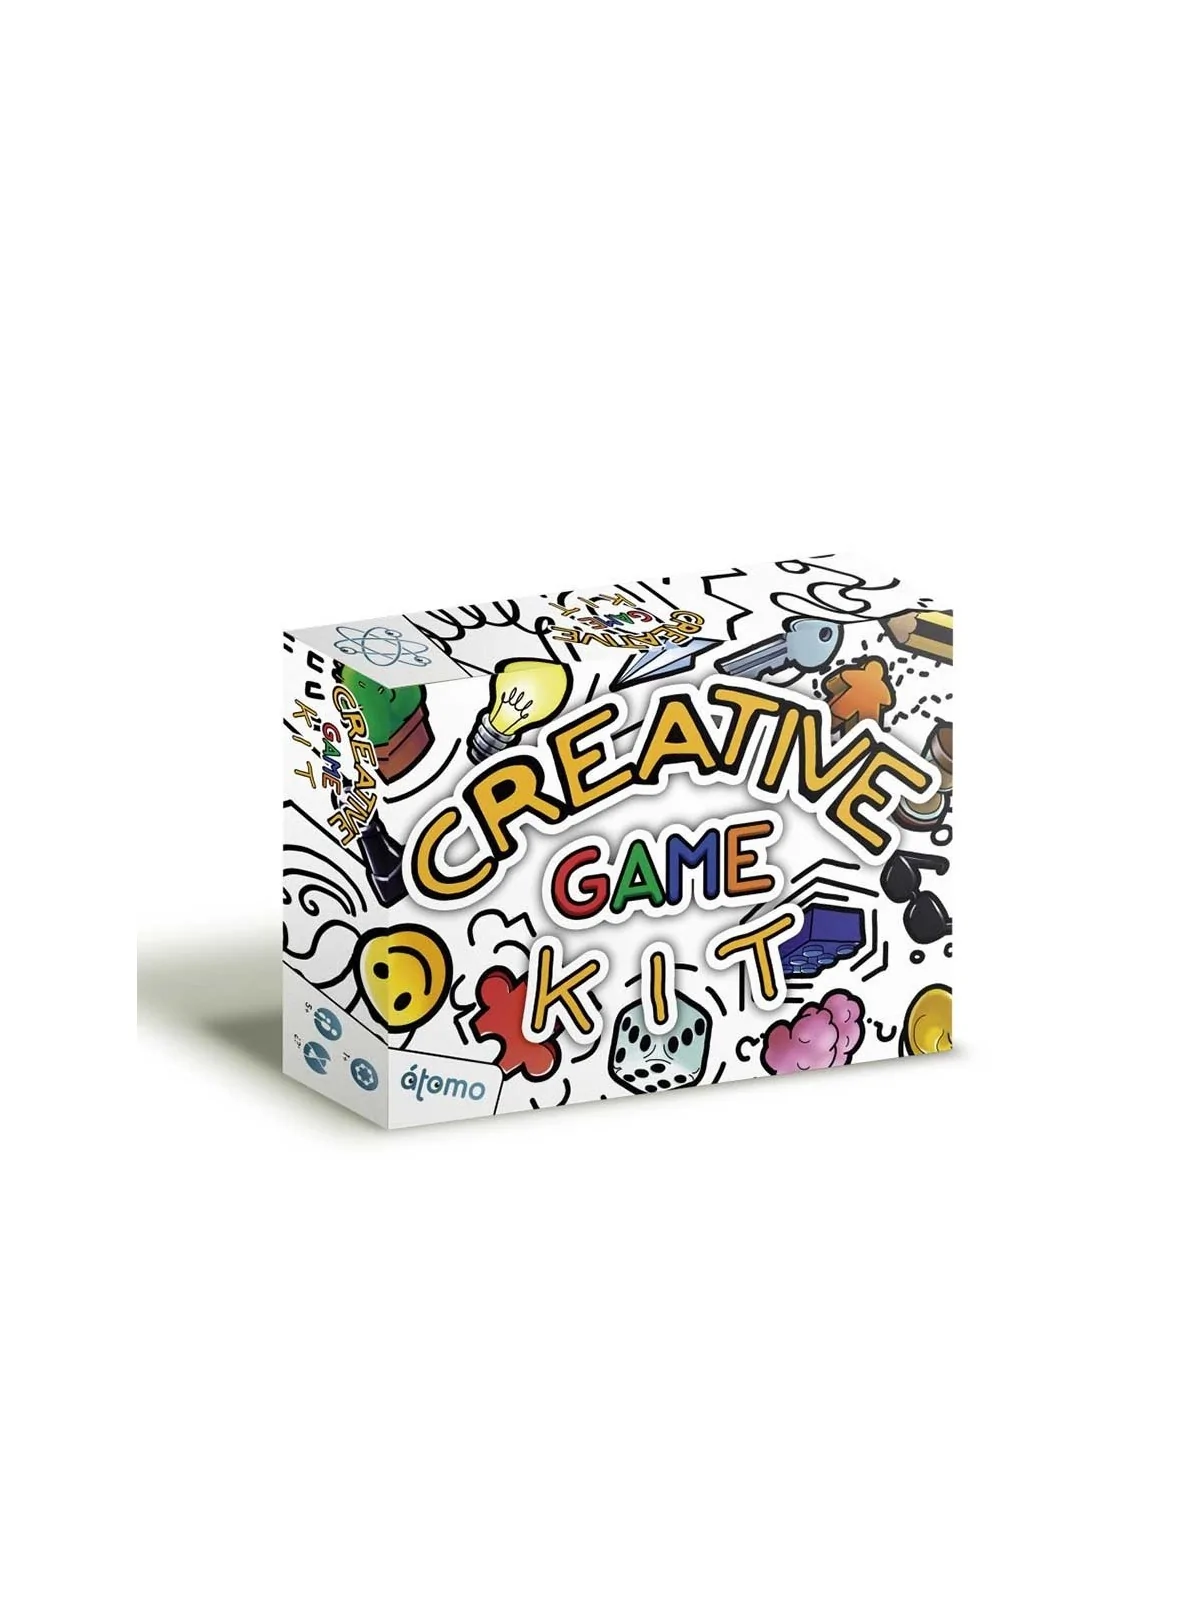 Comprar Creative Game Kit - CGK barato al mejor precio 12,15 € de Atom